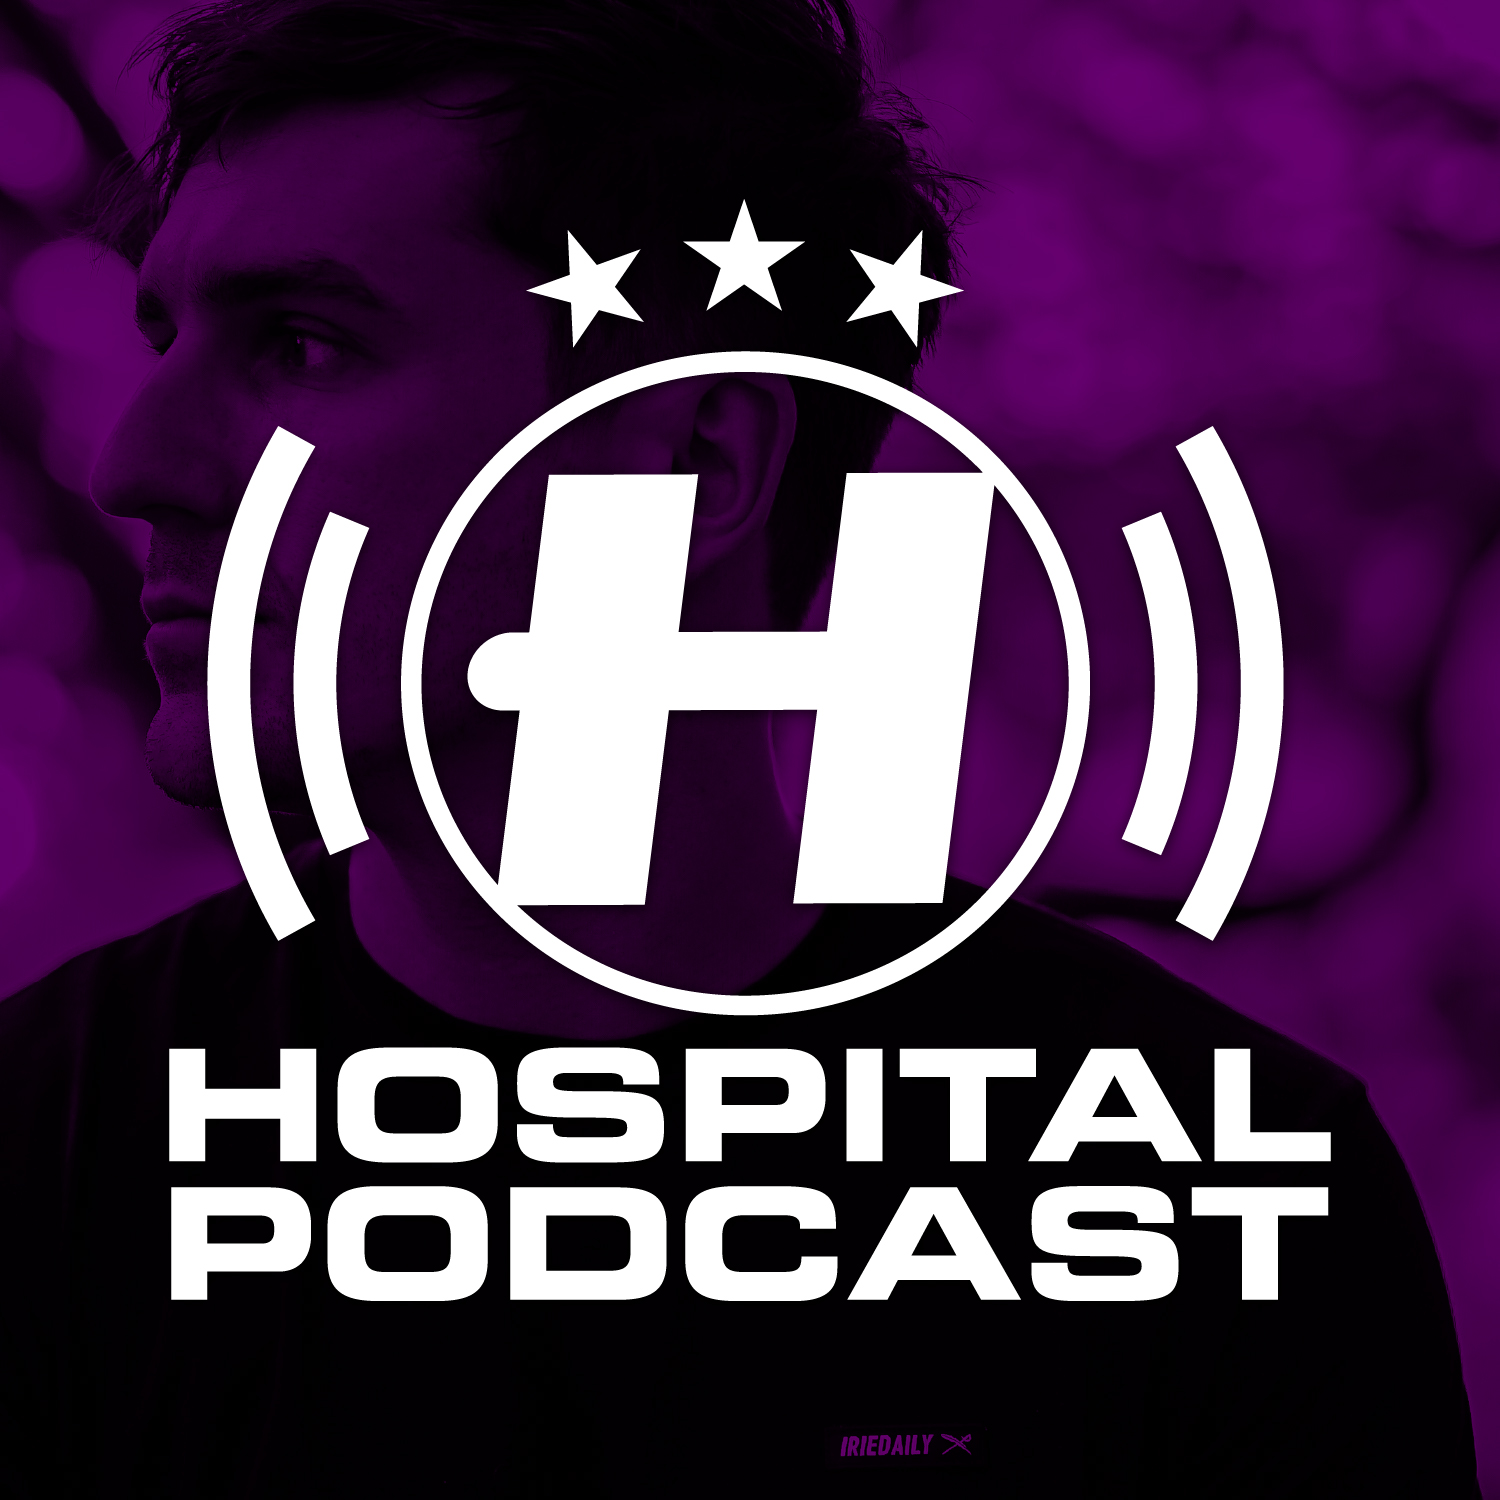 Hospital Podcast 425 Grafix Takeover Artwork